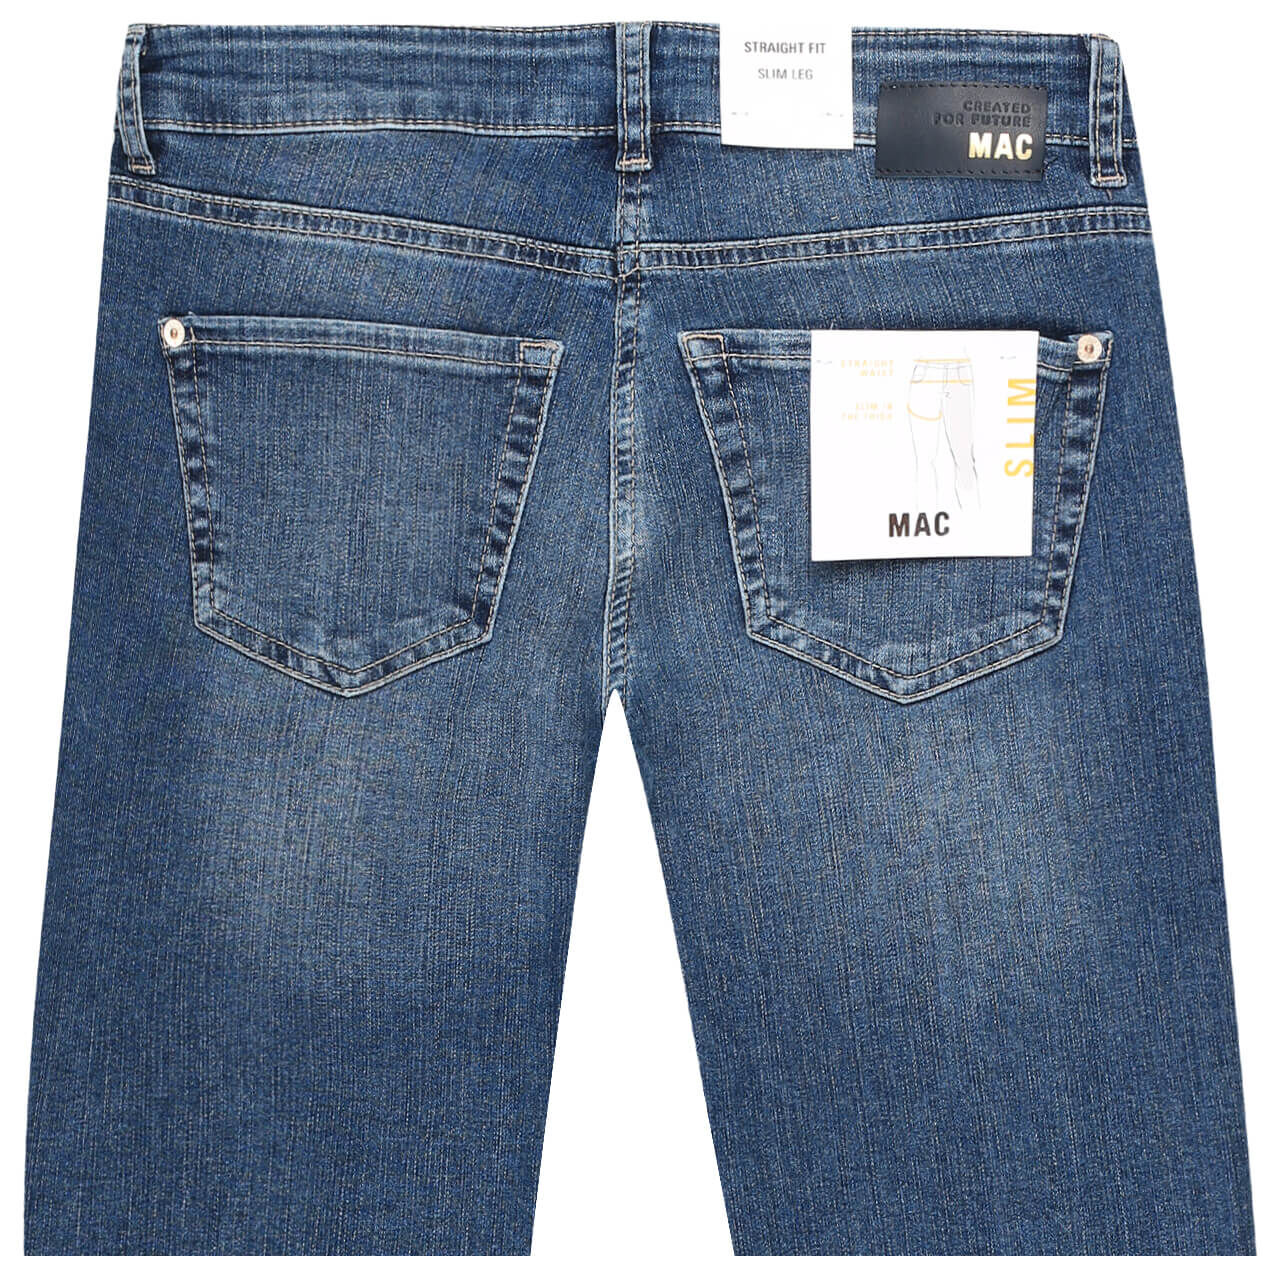 MAC Jeans Slim für Damen in Blau verwaschen, FarbNr.: D586